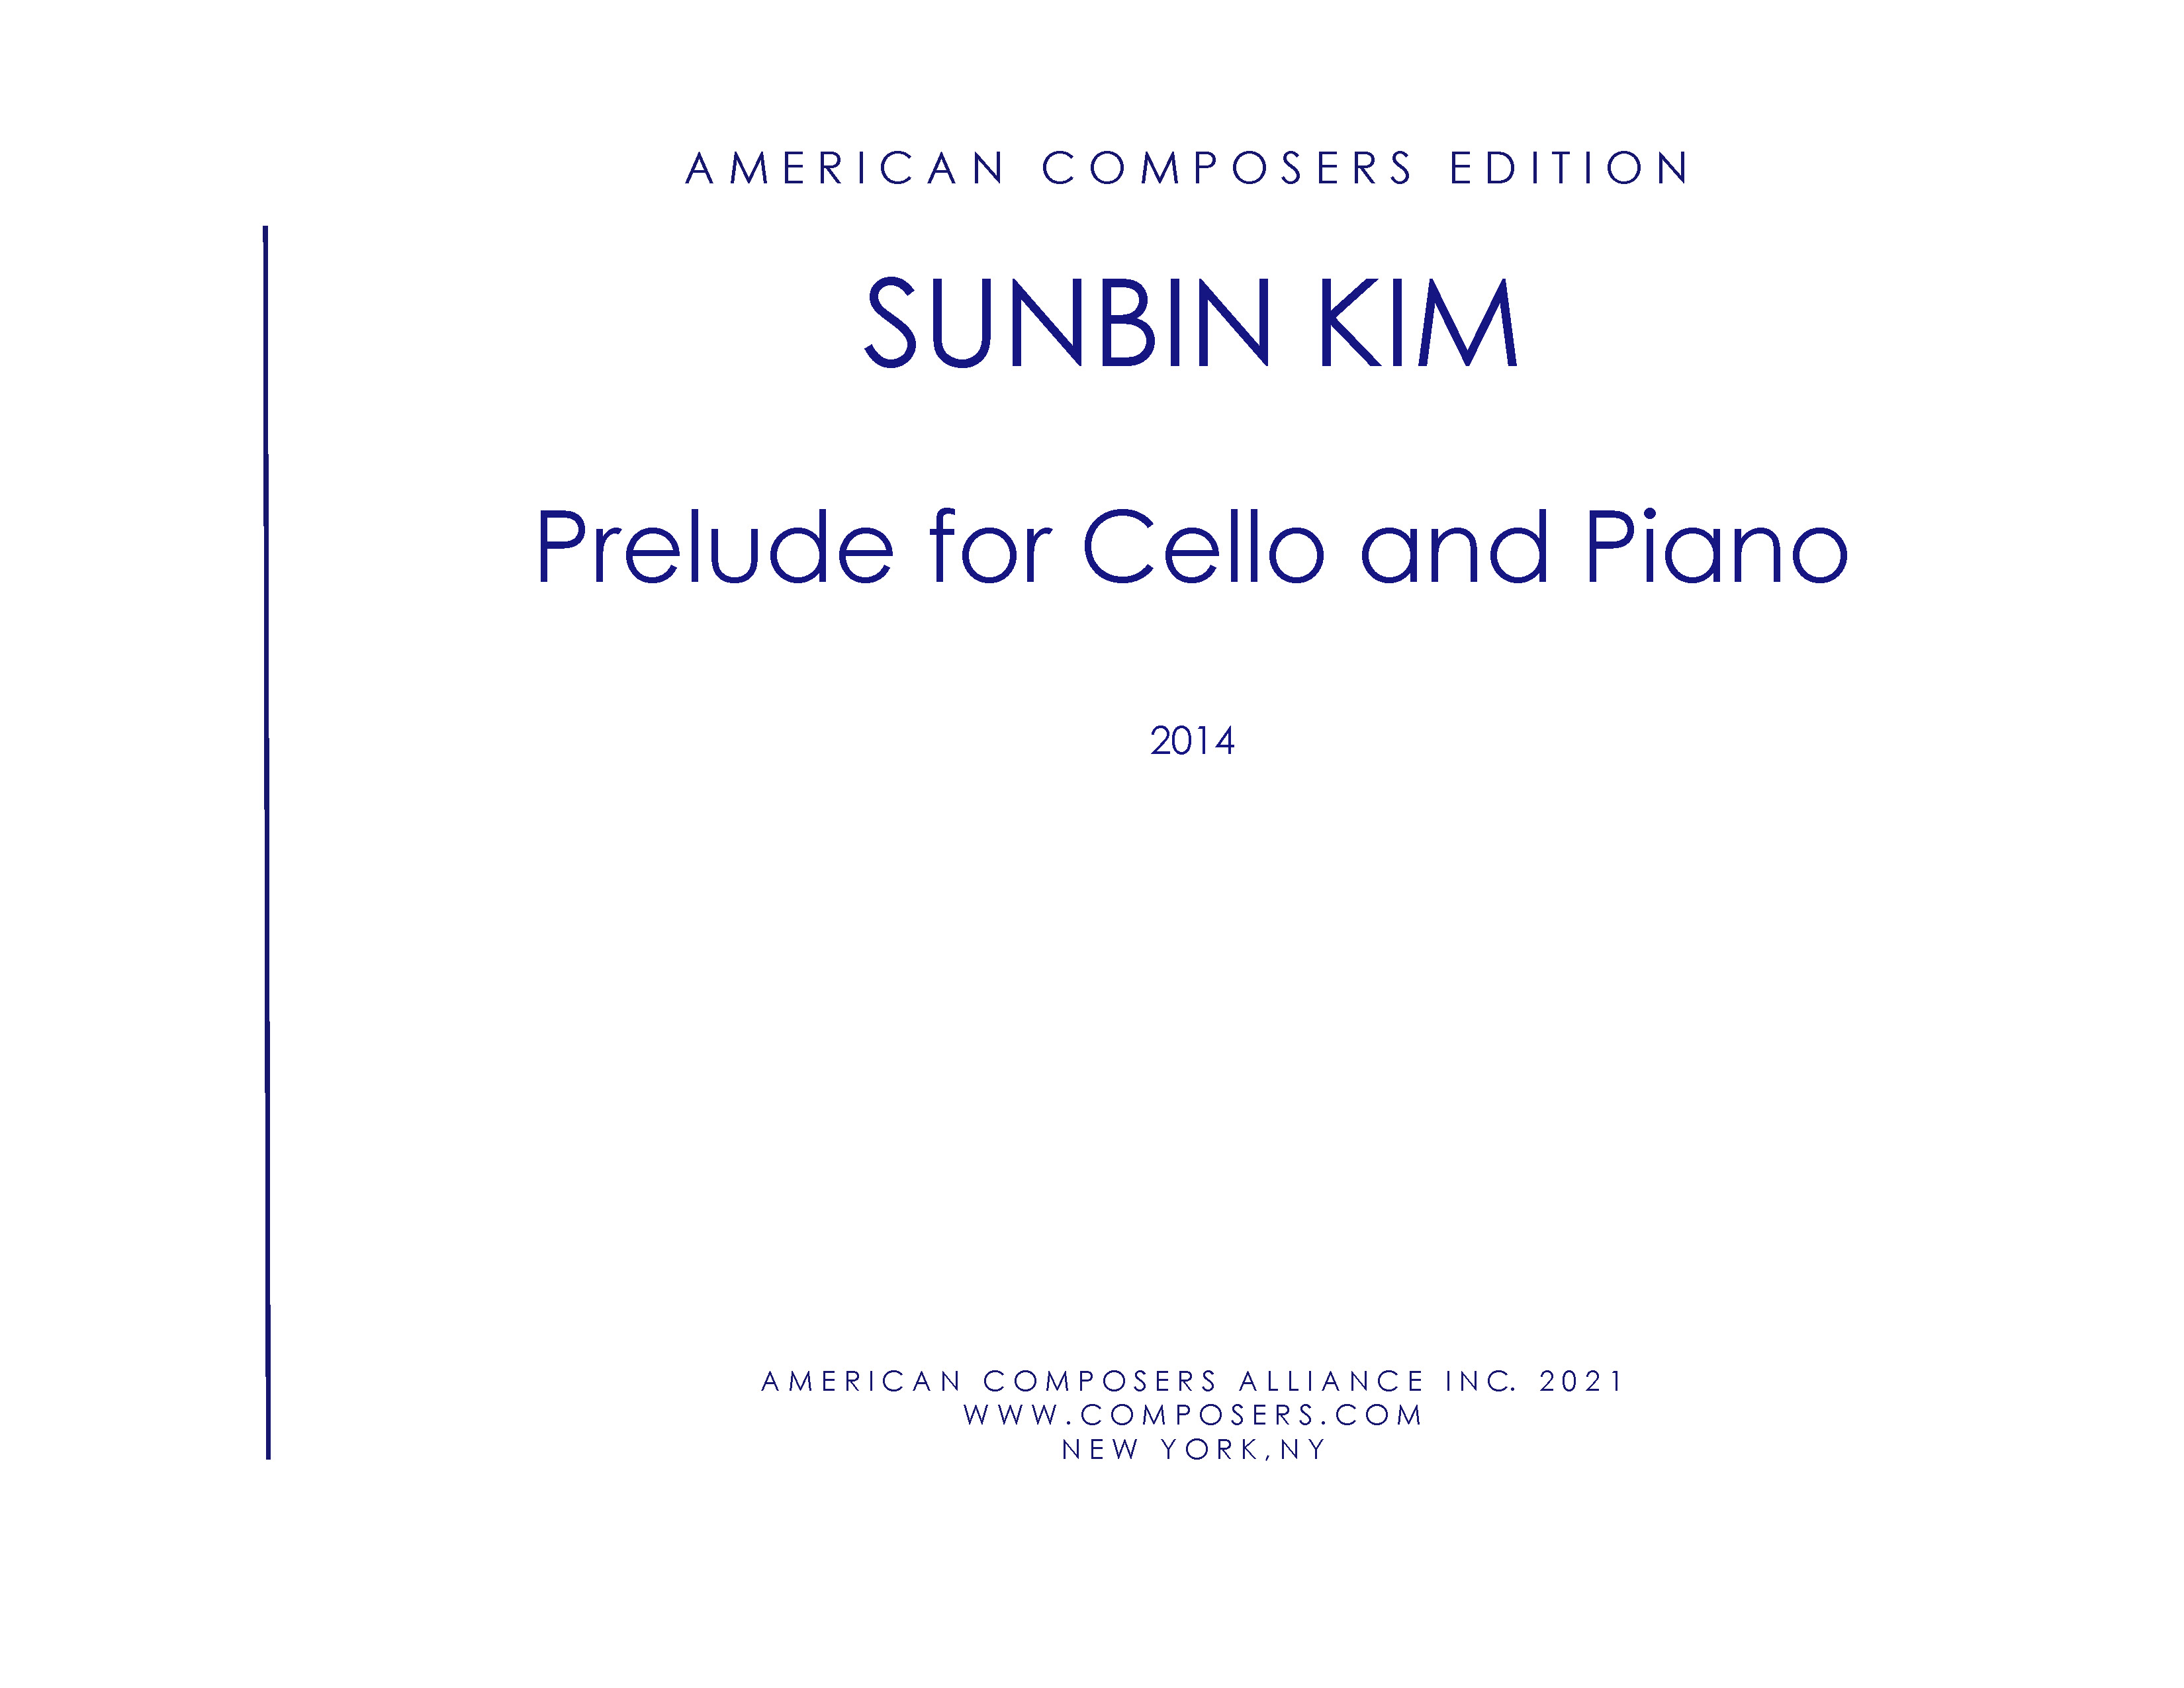 Prelude For Cello and Piano (2014).